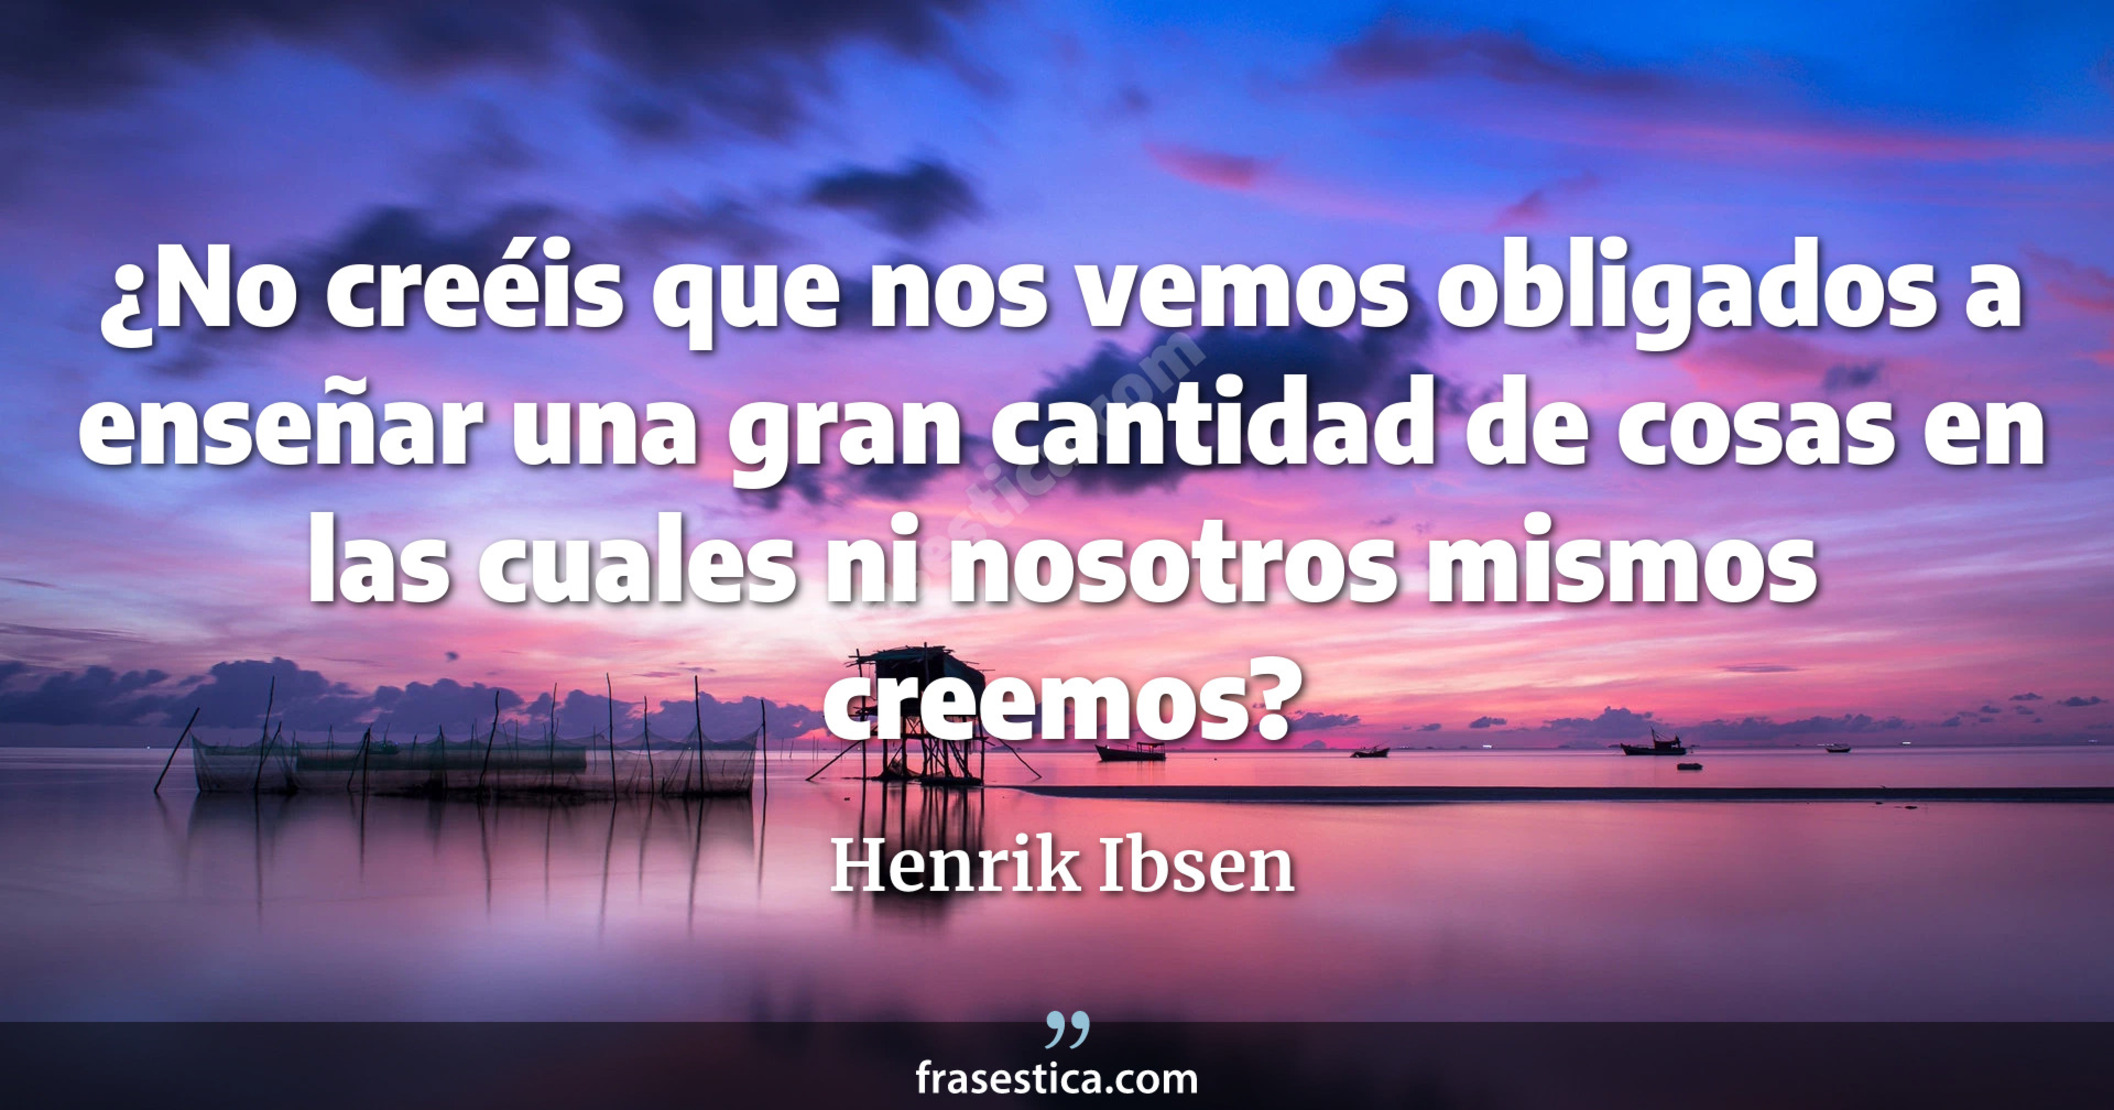 ¿No creéis que nos vemos obligados a enseñar una gran cantidad de cosas en las cuales ni nosotros mismos creemos? - Henrik Ibsen